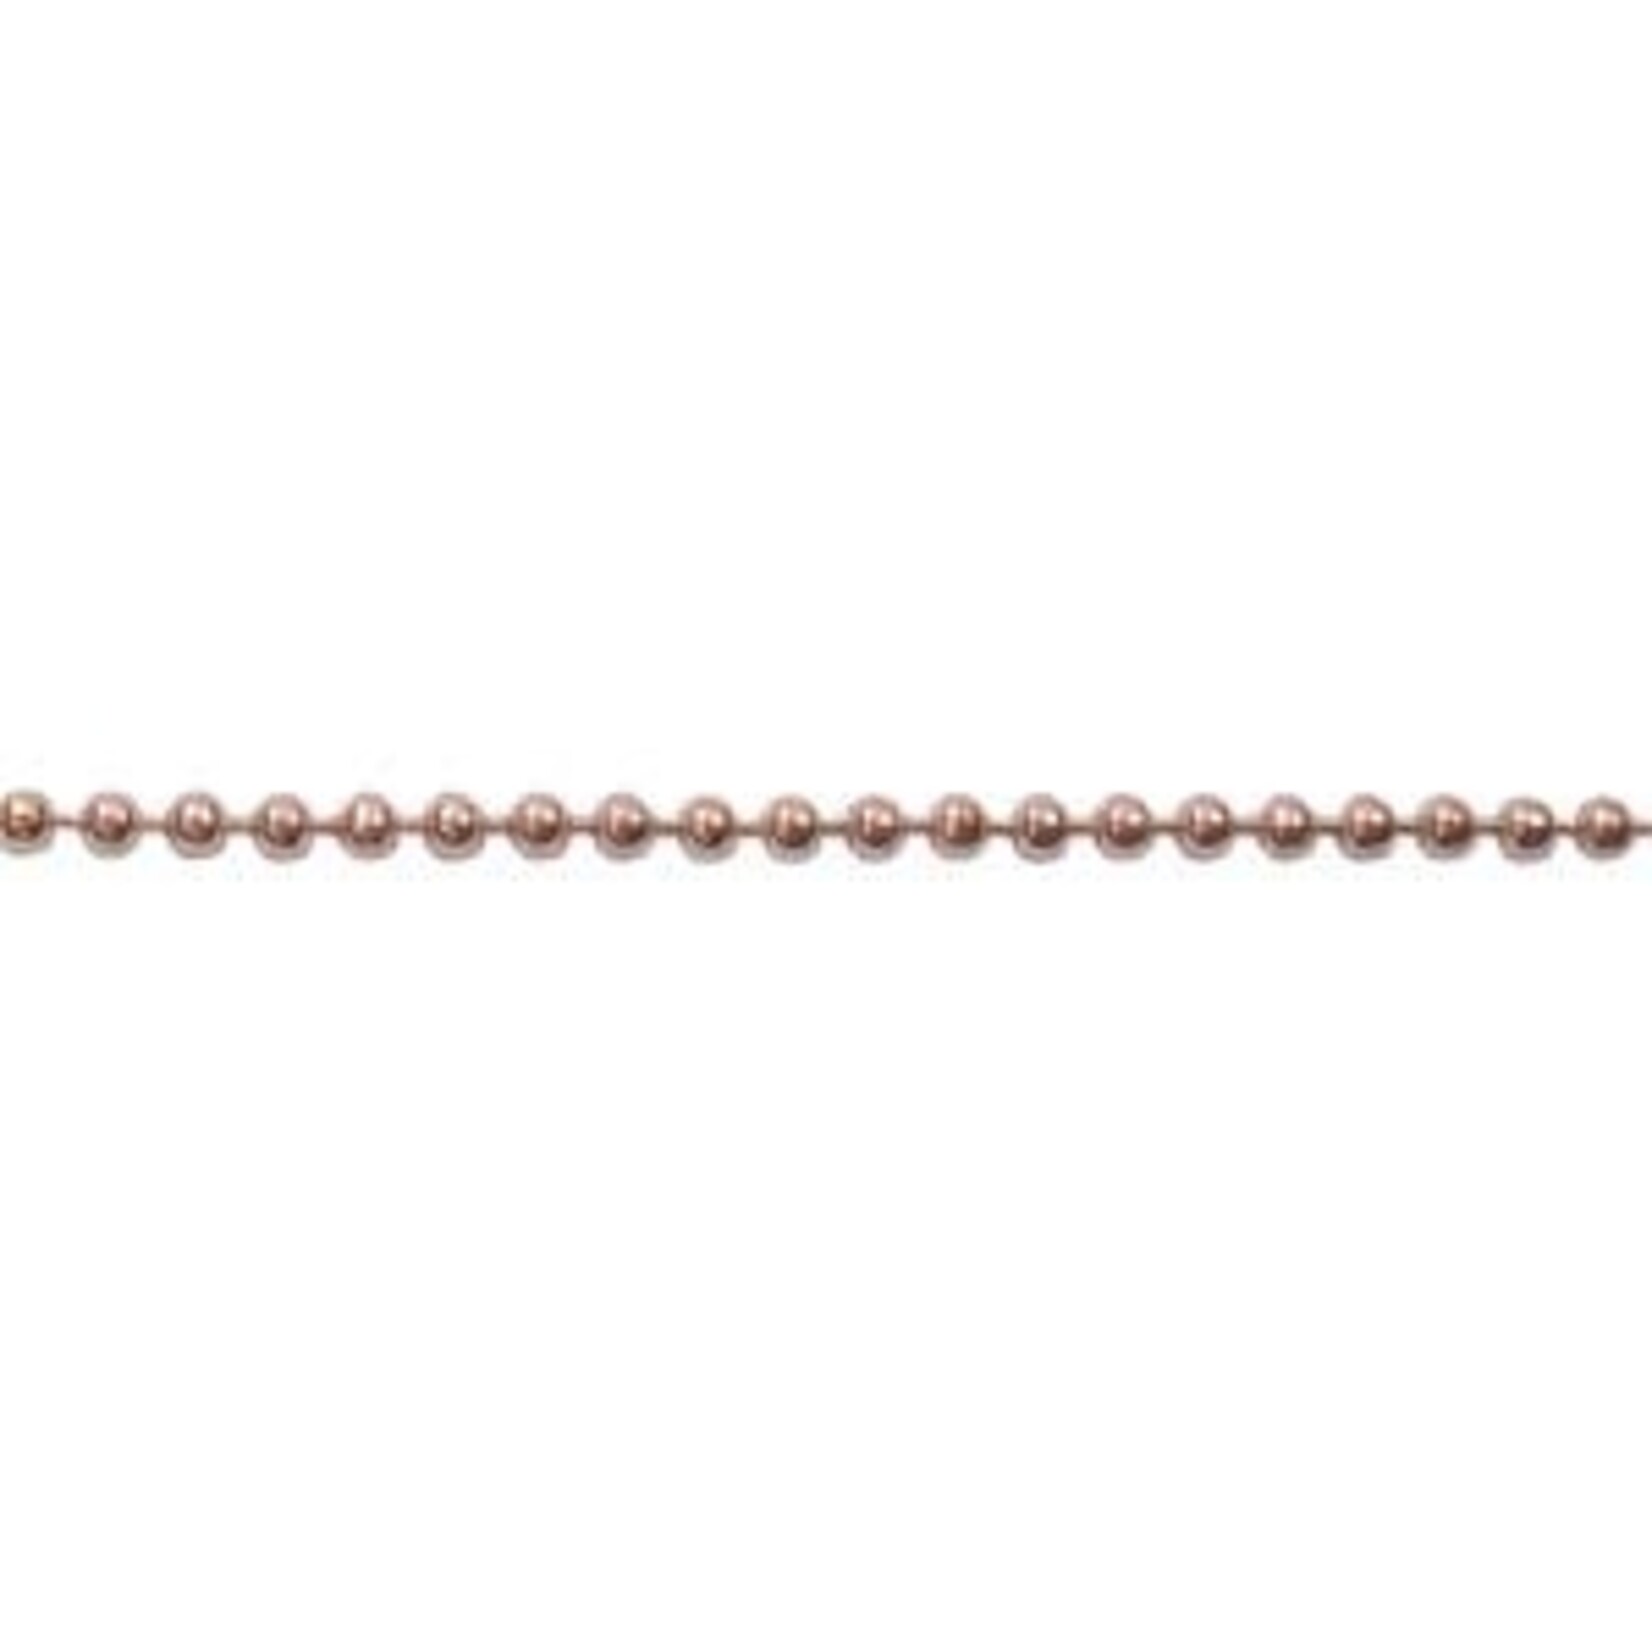 Copper 2.4mm Ball Chain